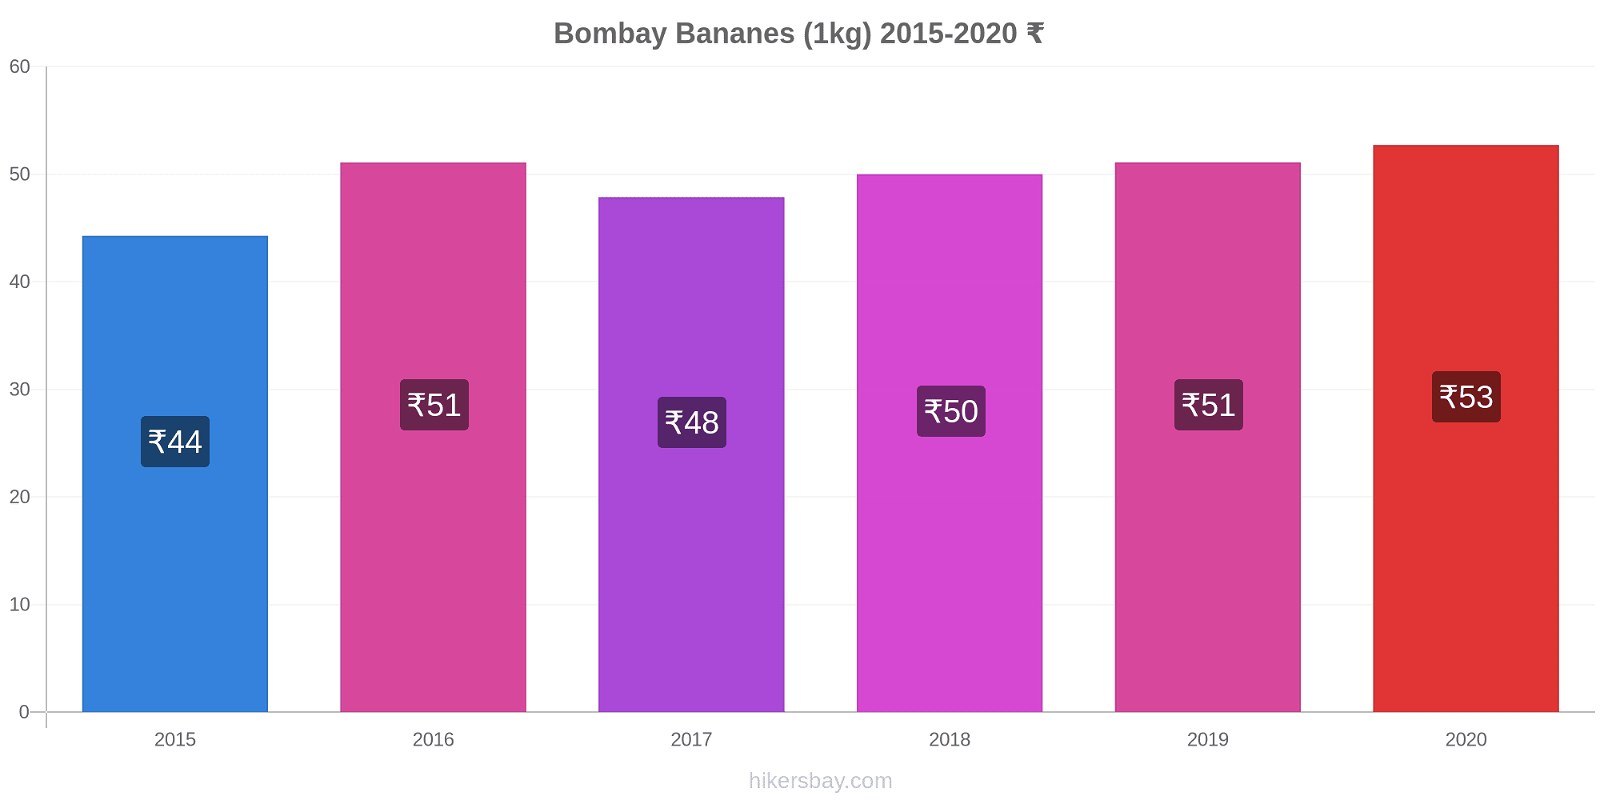 Bombay changements de prix Bananes (1kg) hikersbay.com